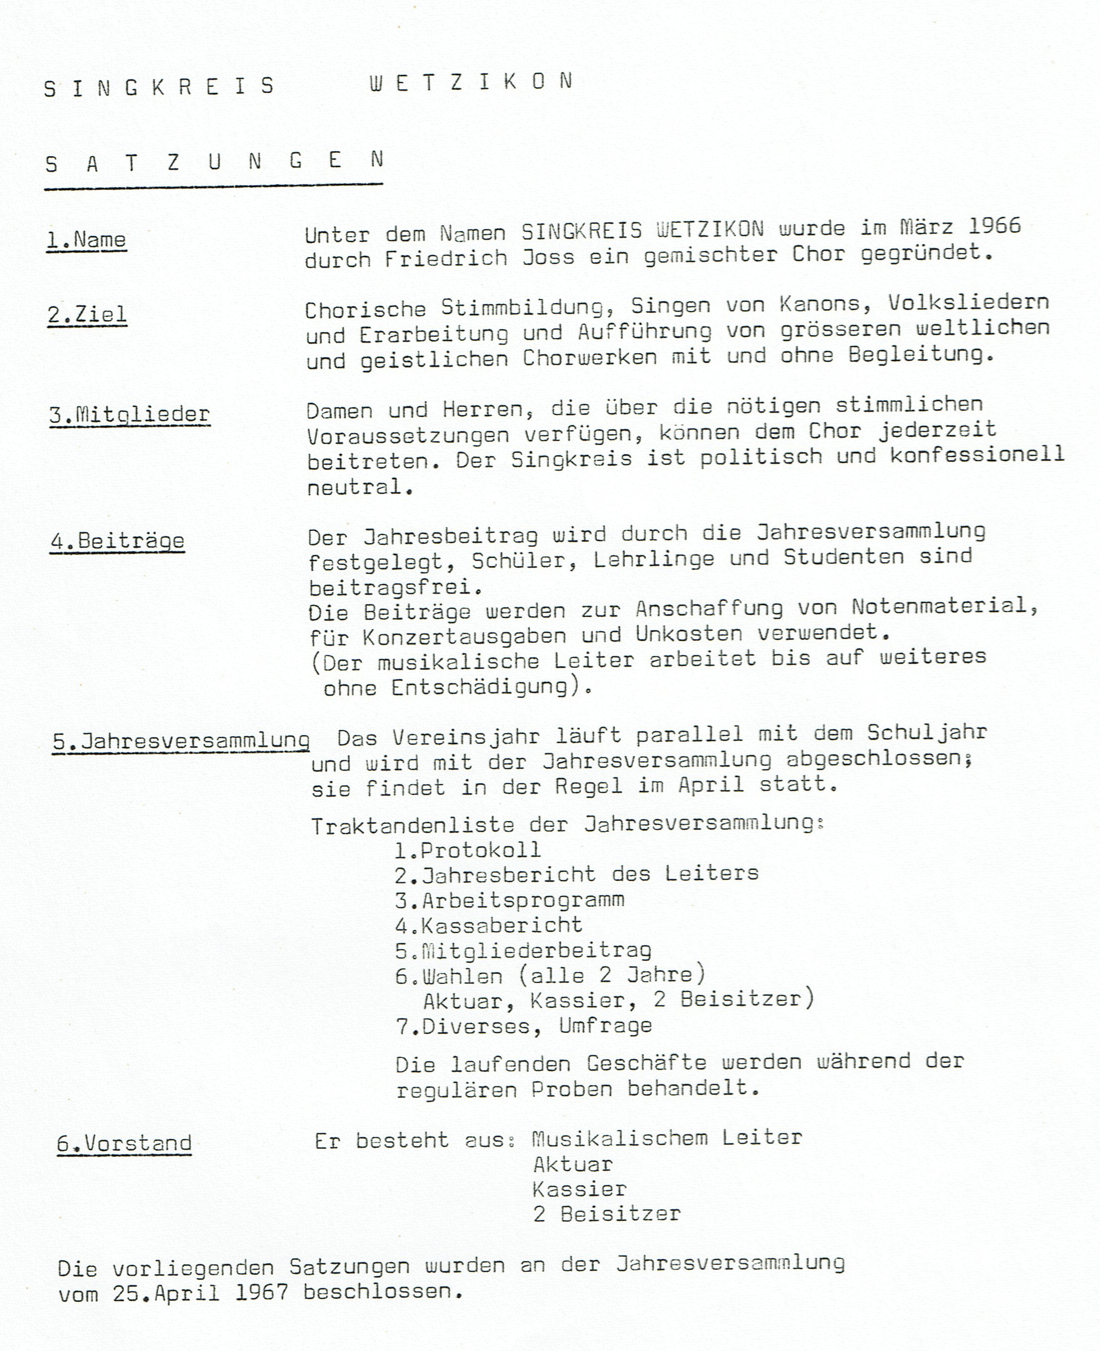 1. Statuten von April 1967